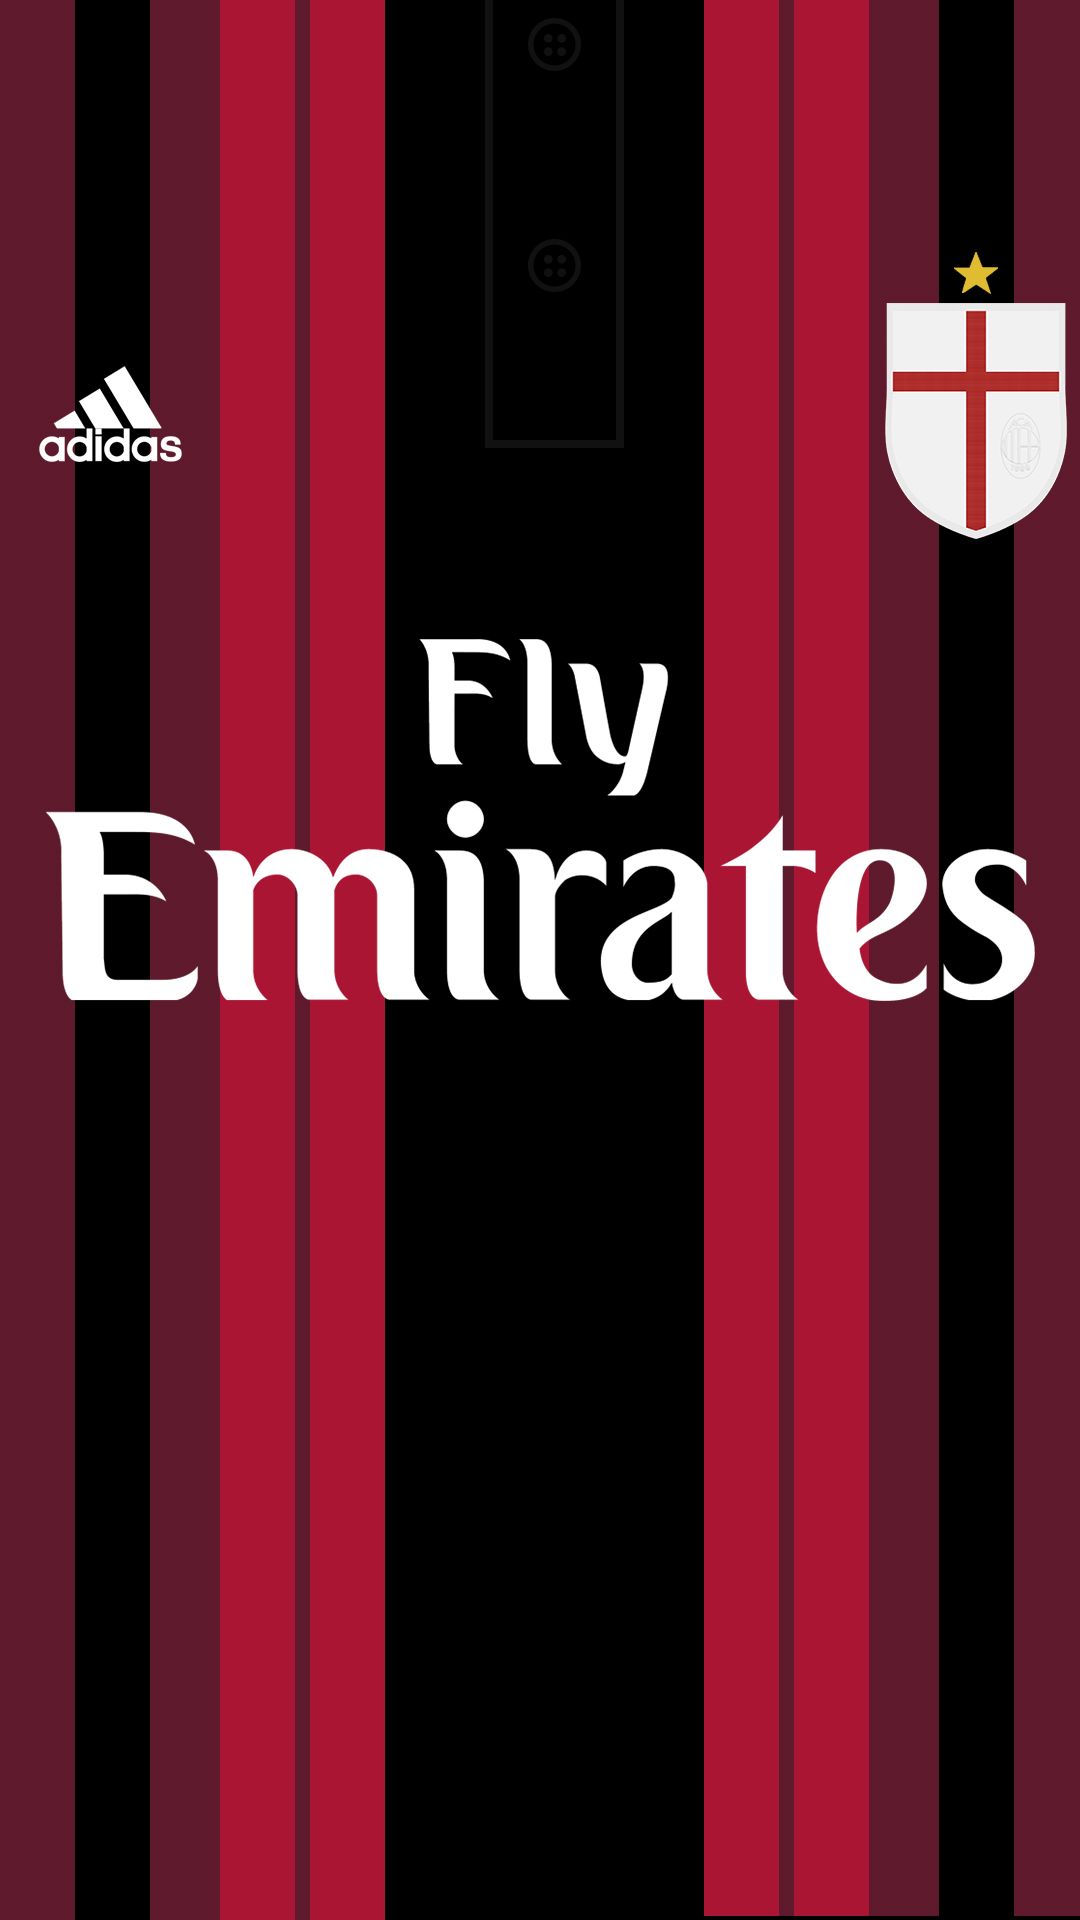 Football Kits - HD Wallpaper 